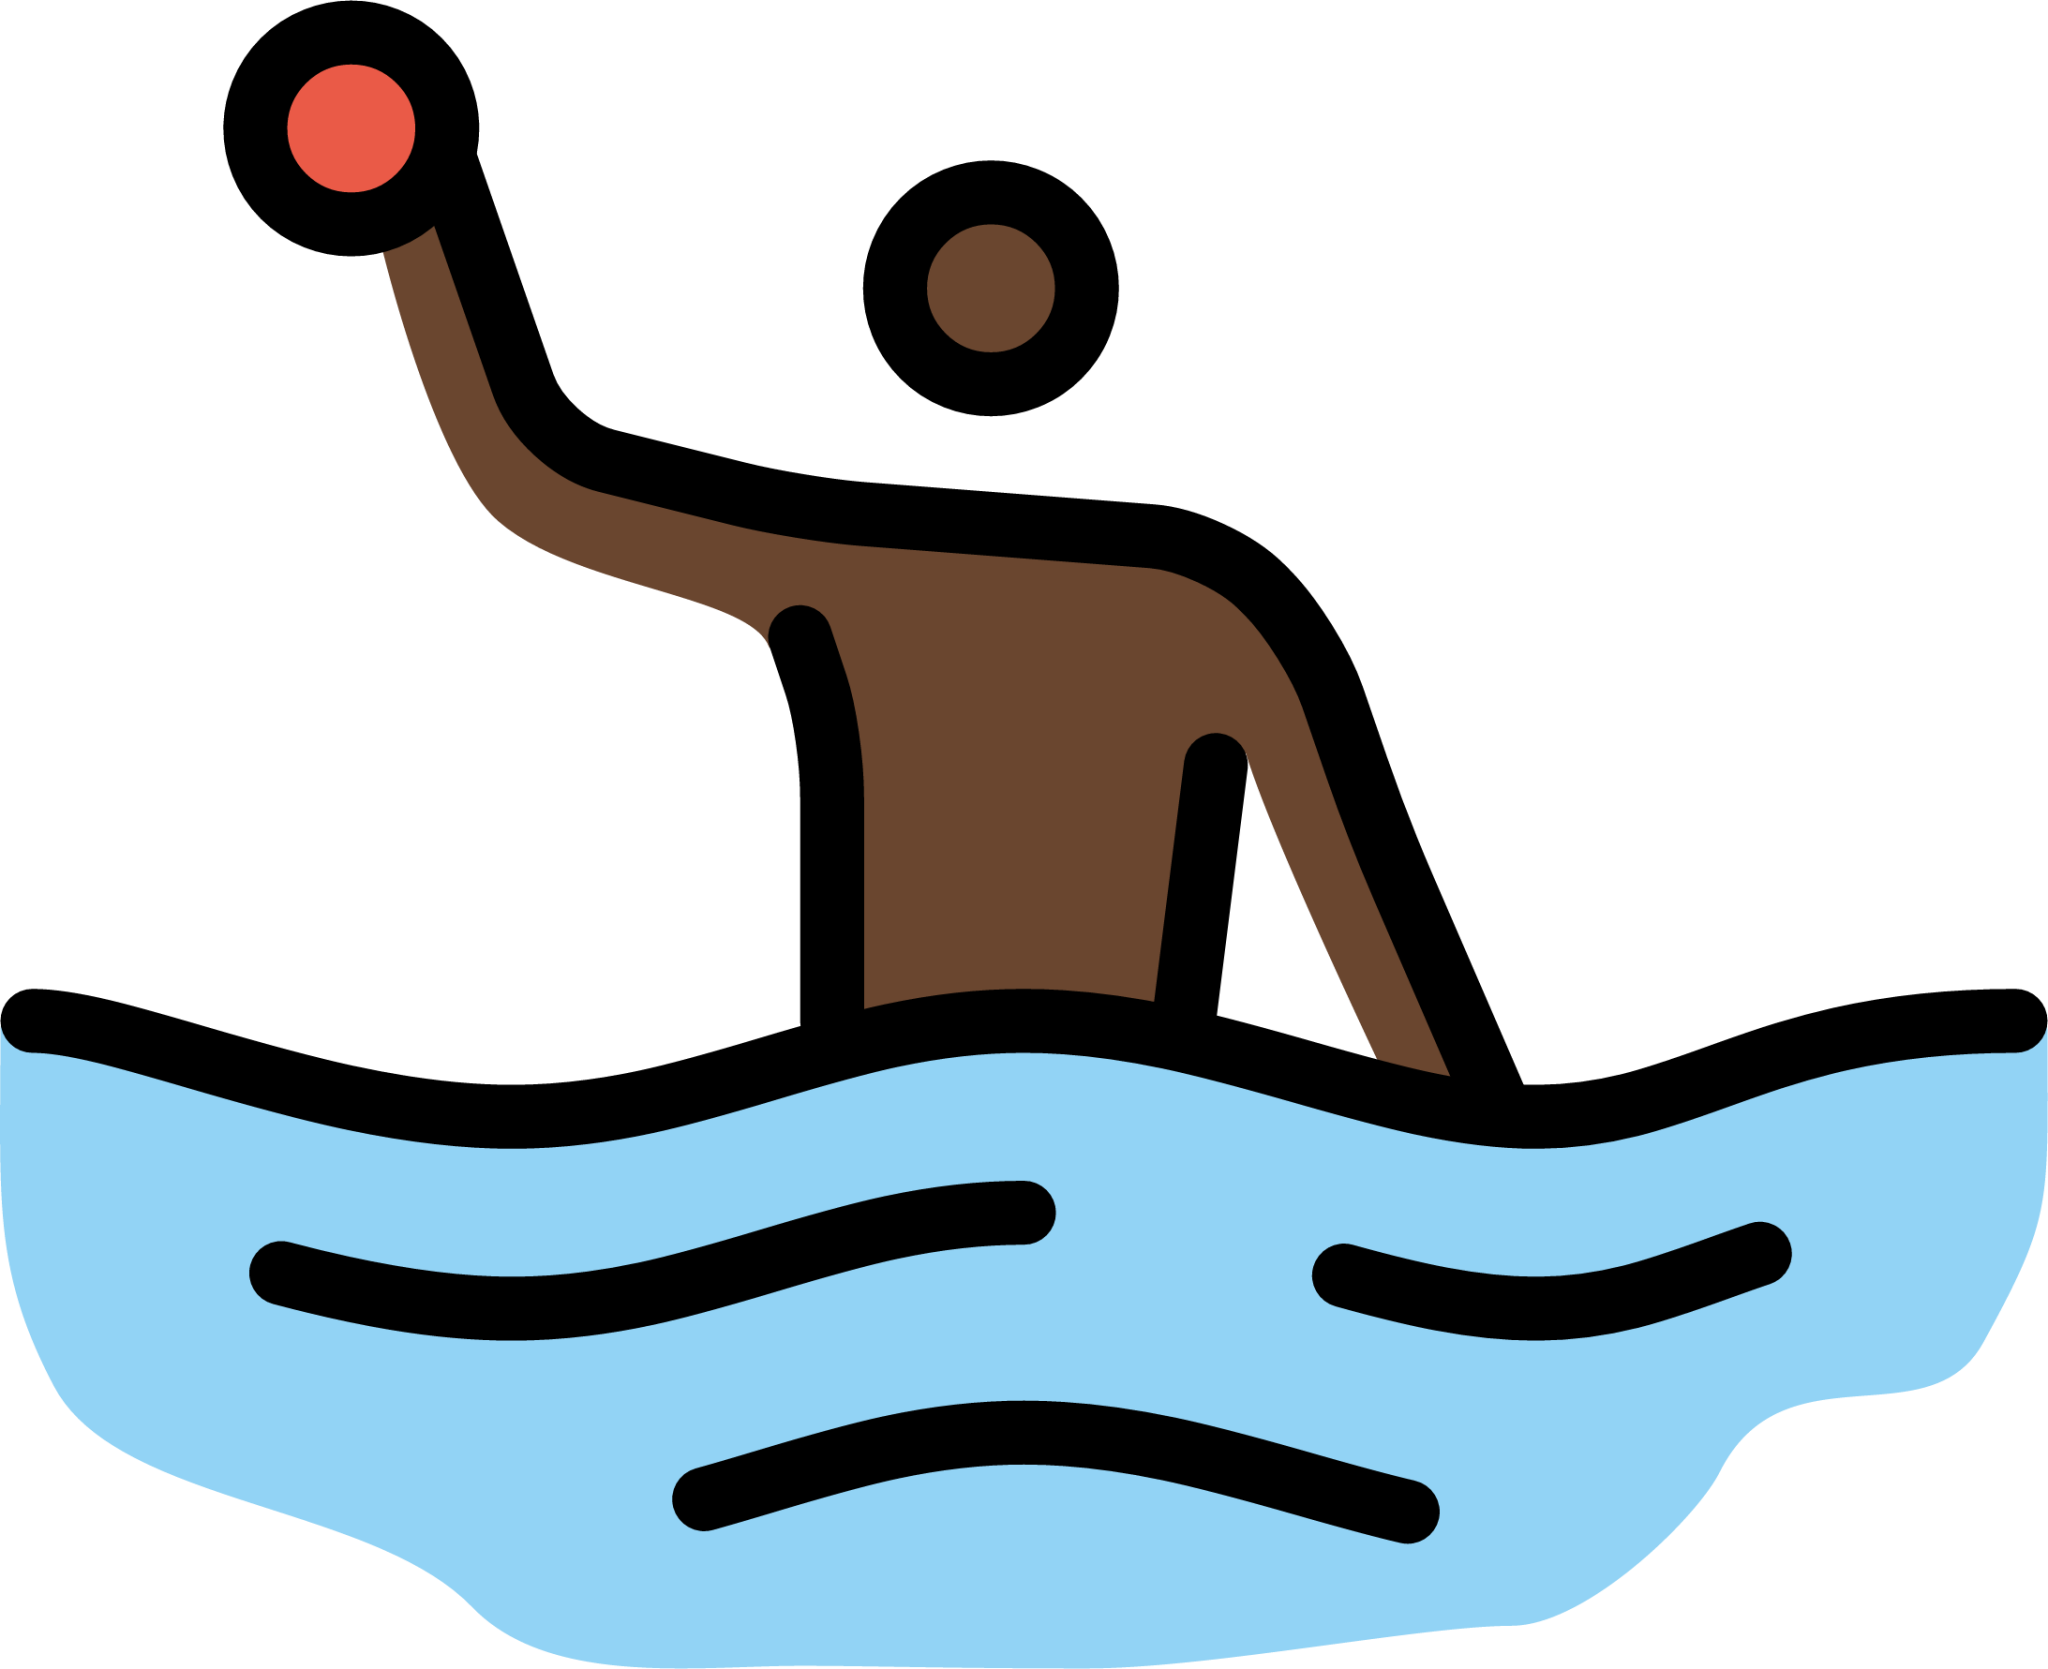 person playing water polo: dark skin tone emoji